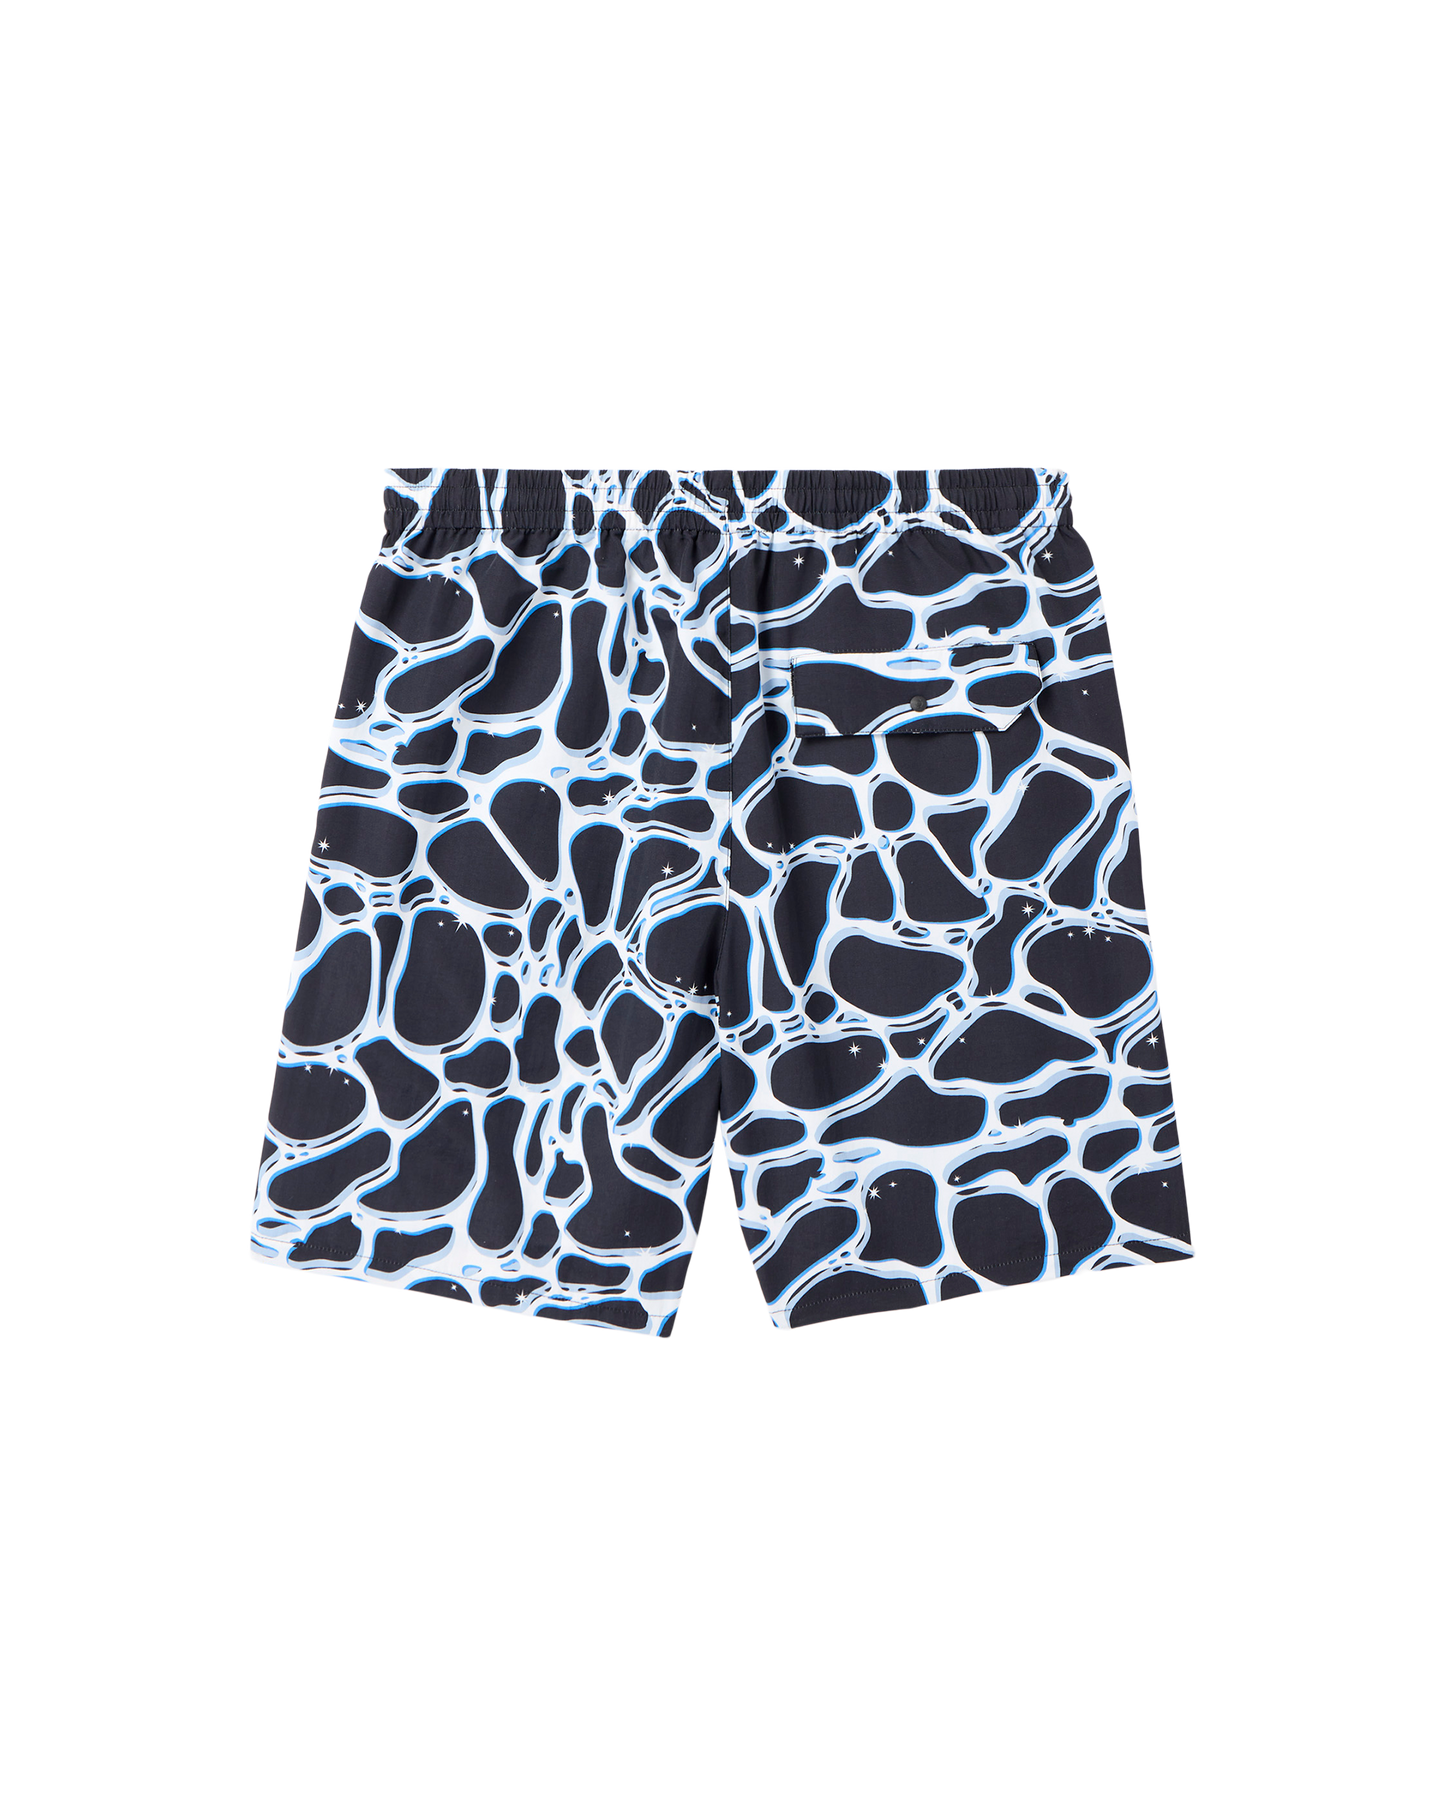 Pantalones cortos para nadar de noche